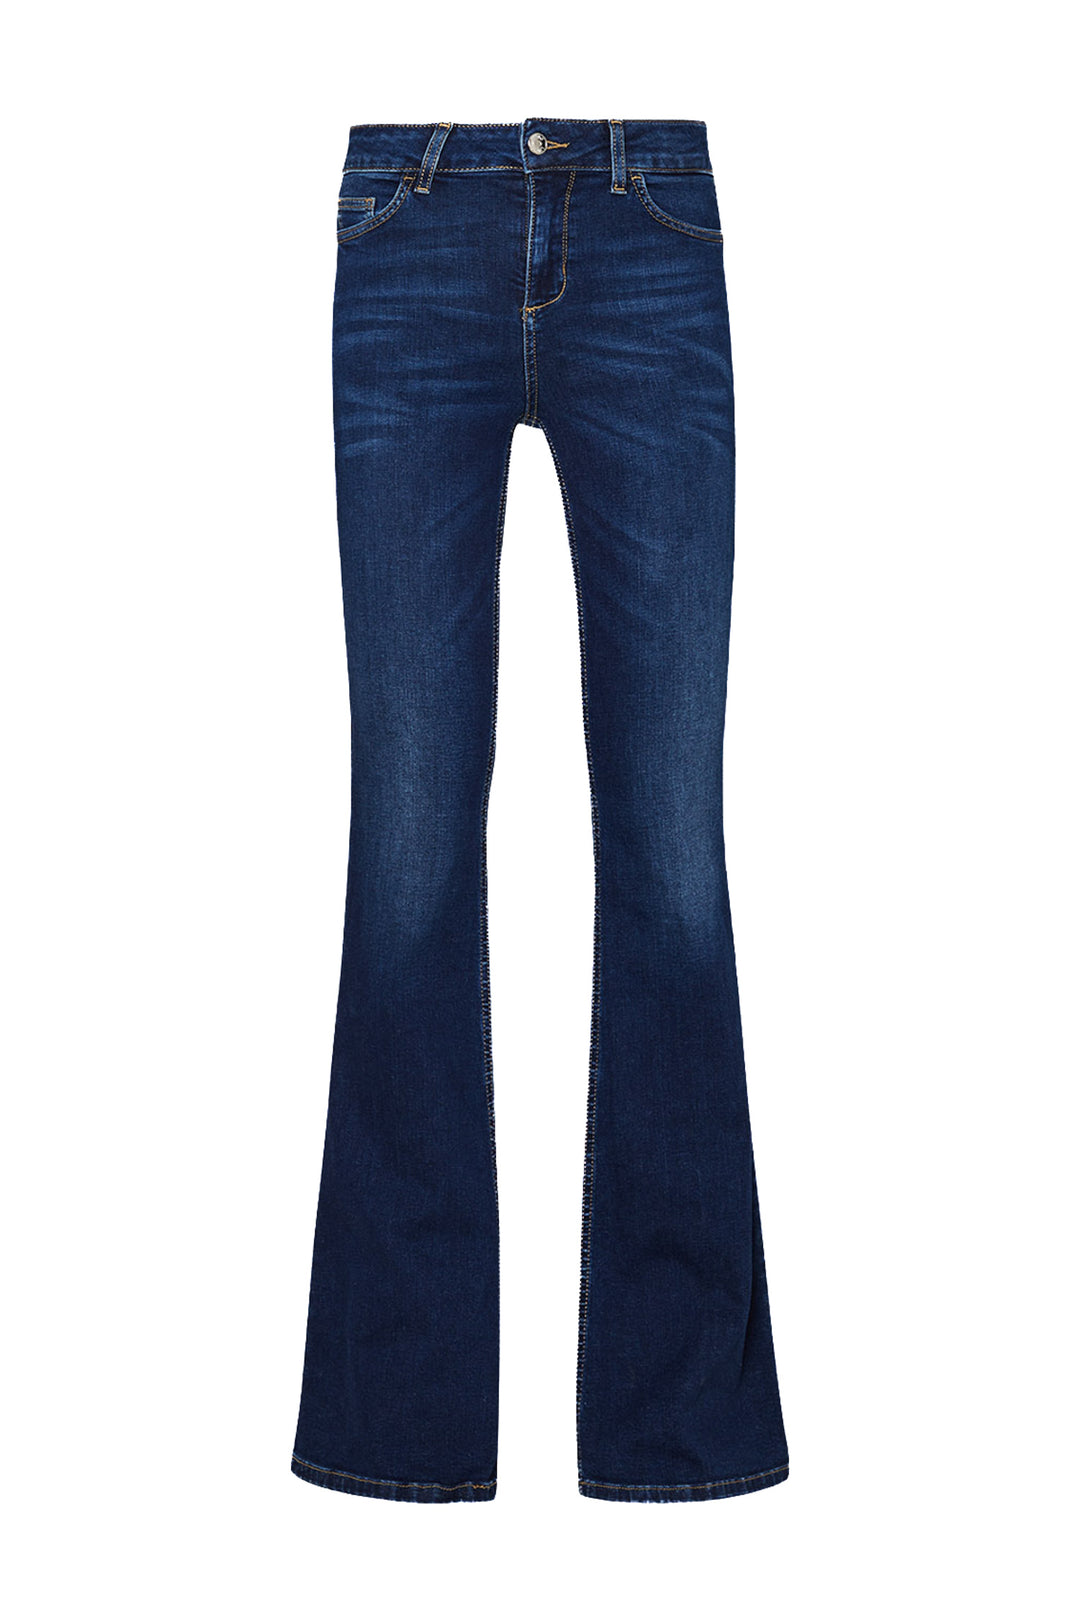 LIU JO Jeans flare ecosostenibili in denim di cotone stretch lavaggio used - Mancinelli 1954